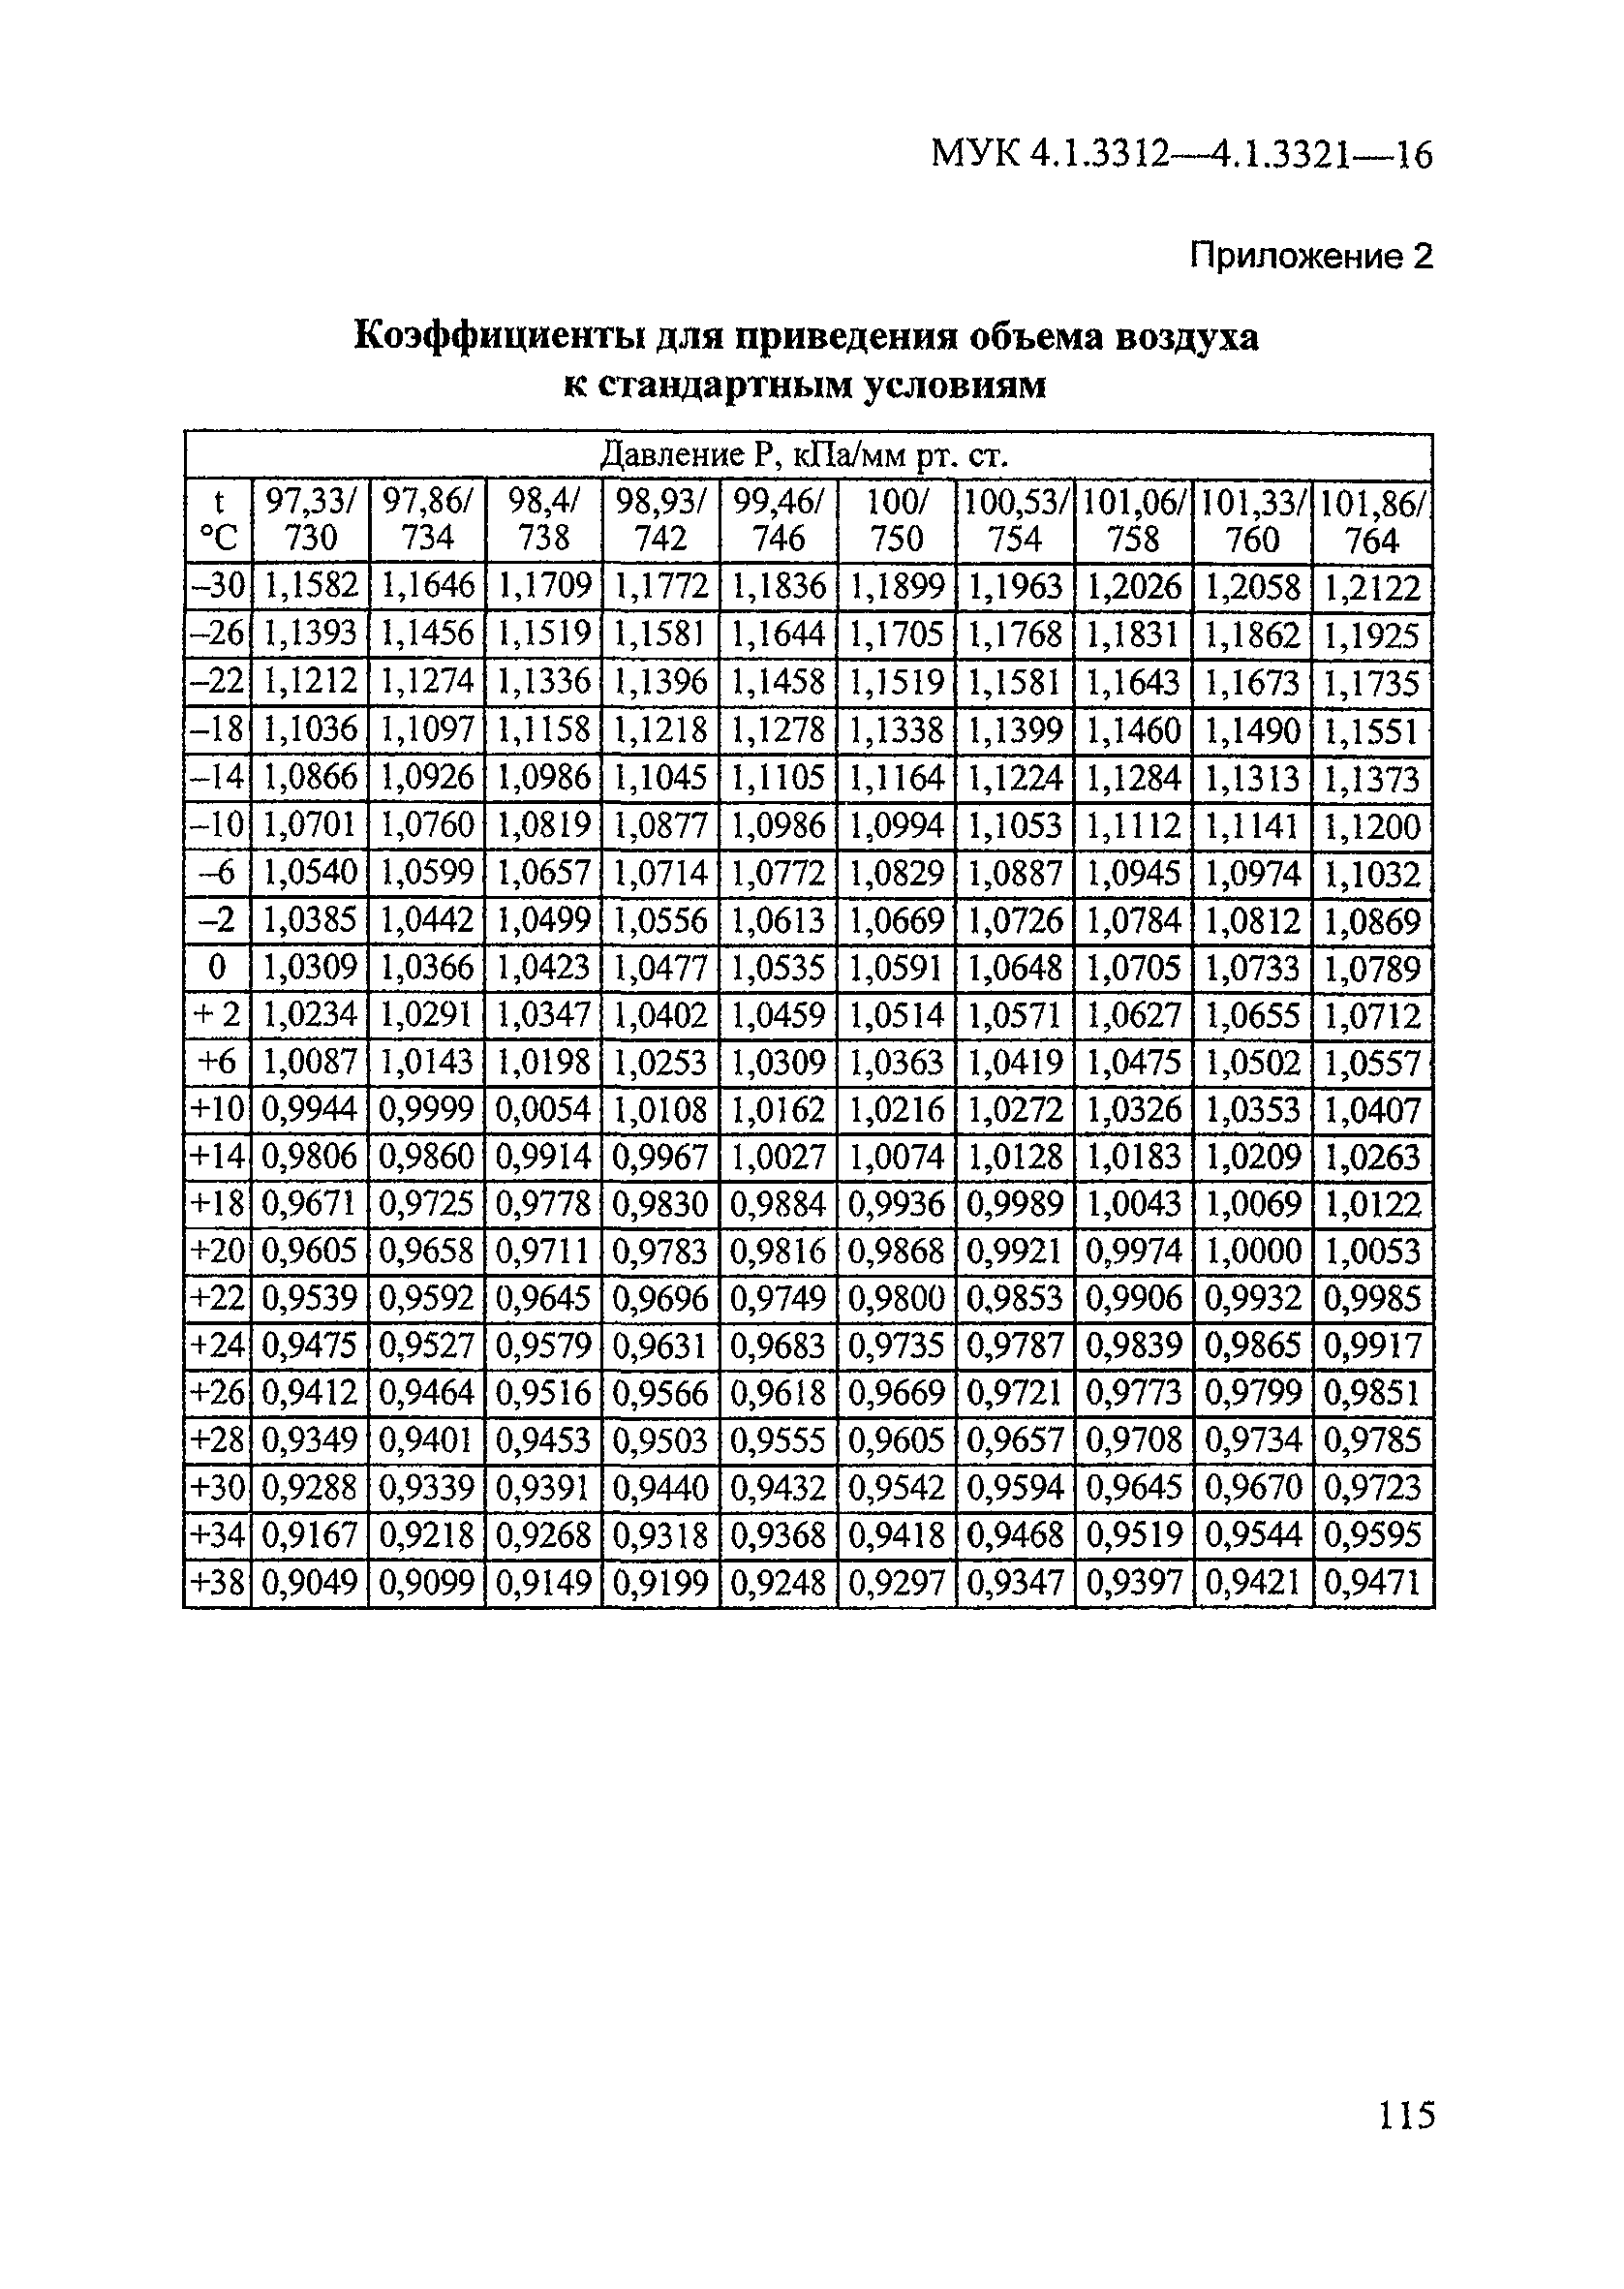 МУК 4.1.3318-15